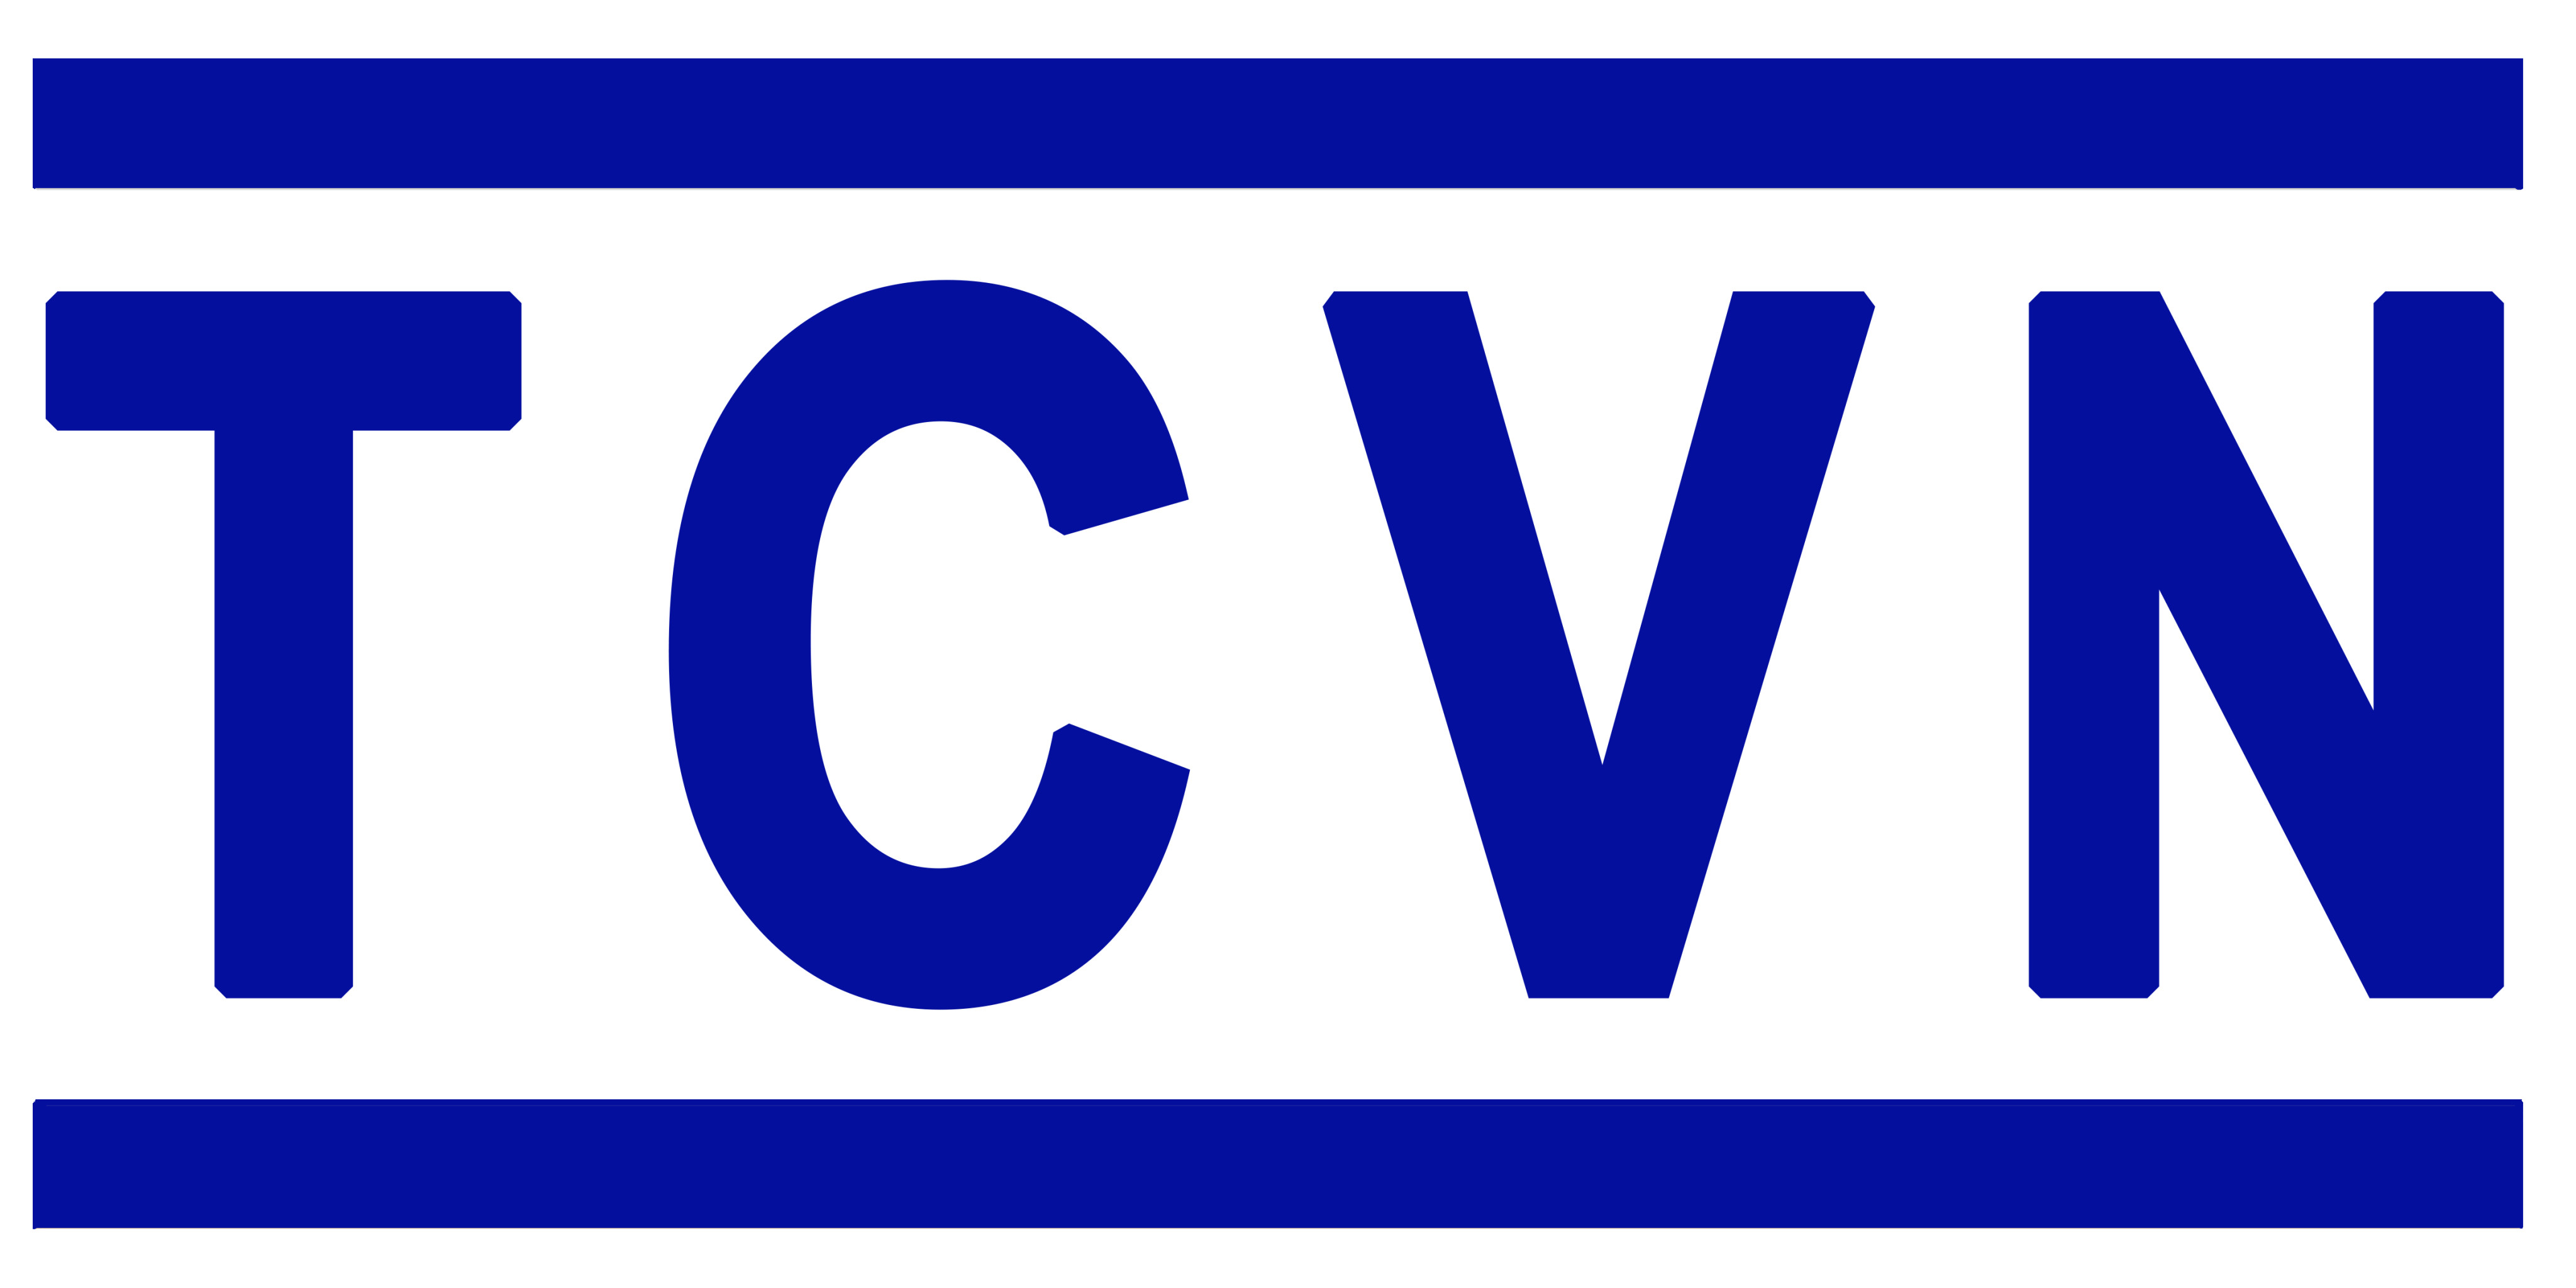 Danh mục tiêu chuẩn Quốc Gia (TCVN) công bố tháng 9 năm 2020